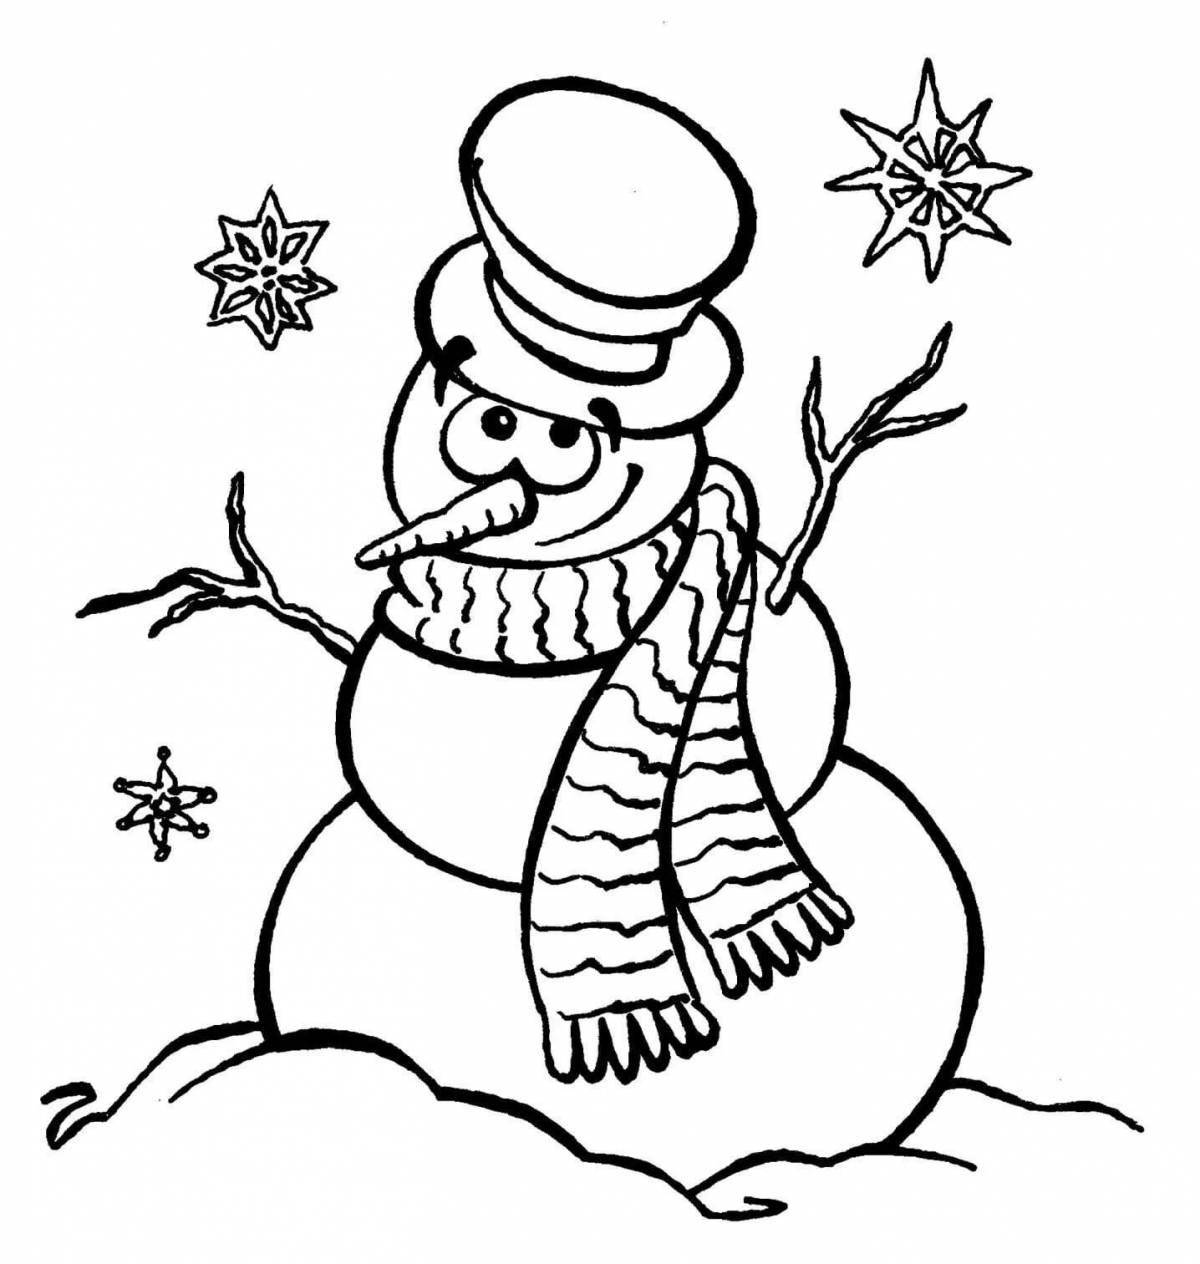 Humorous coloring book snowman